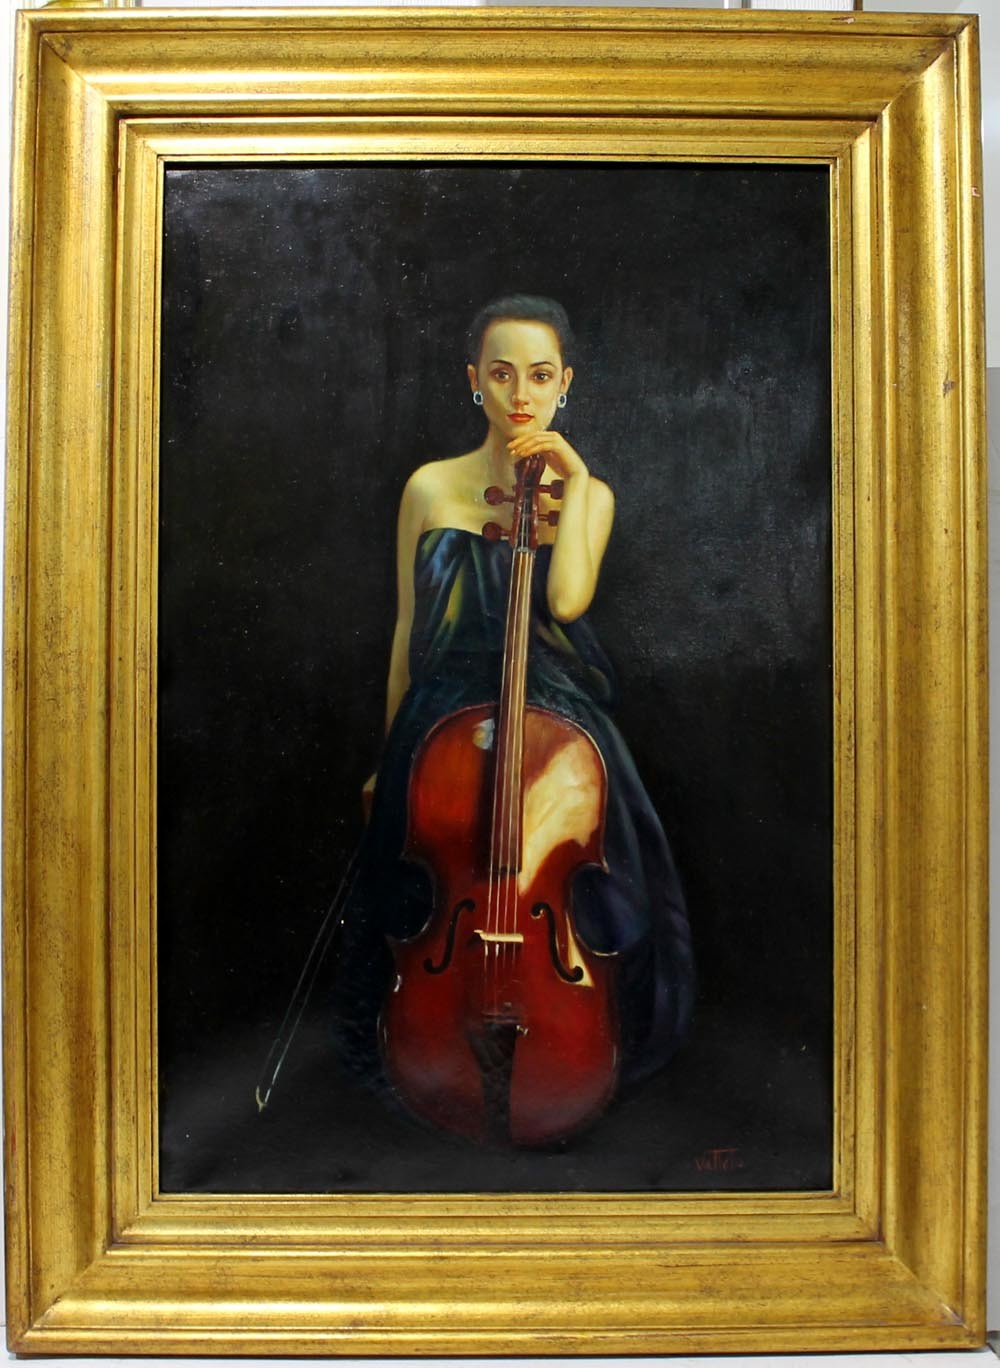 Vallato: Violinist